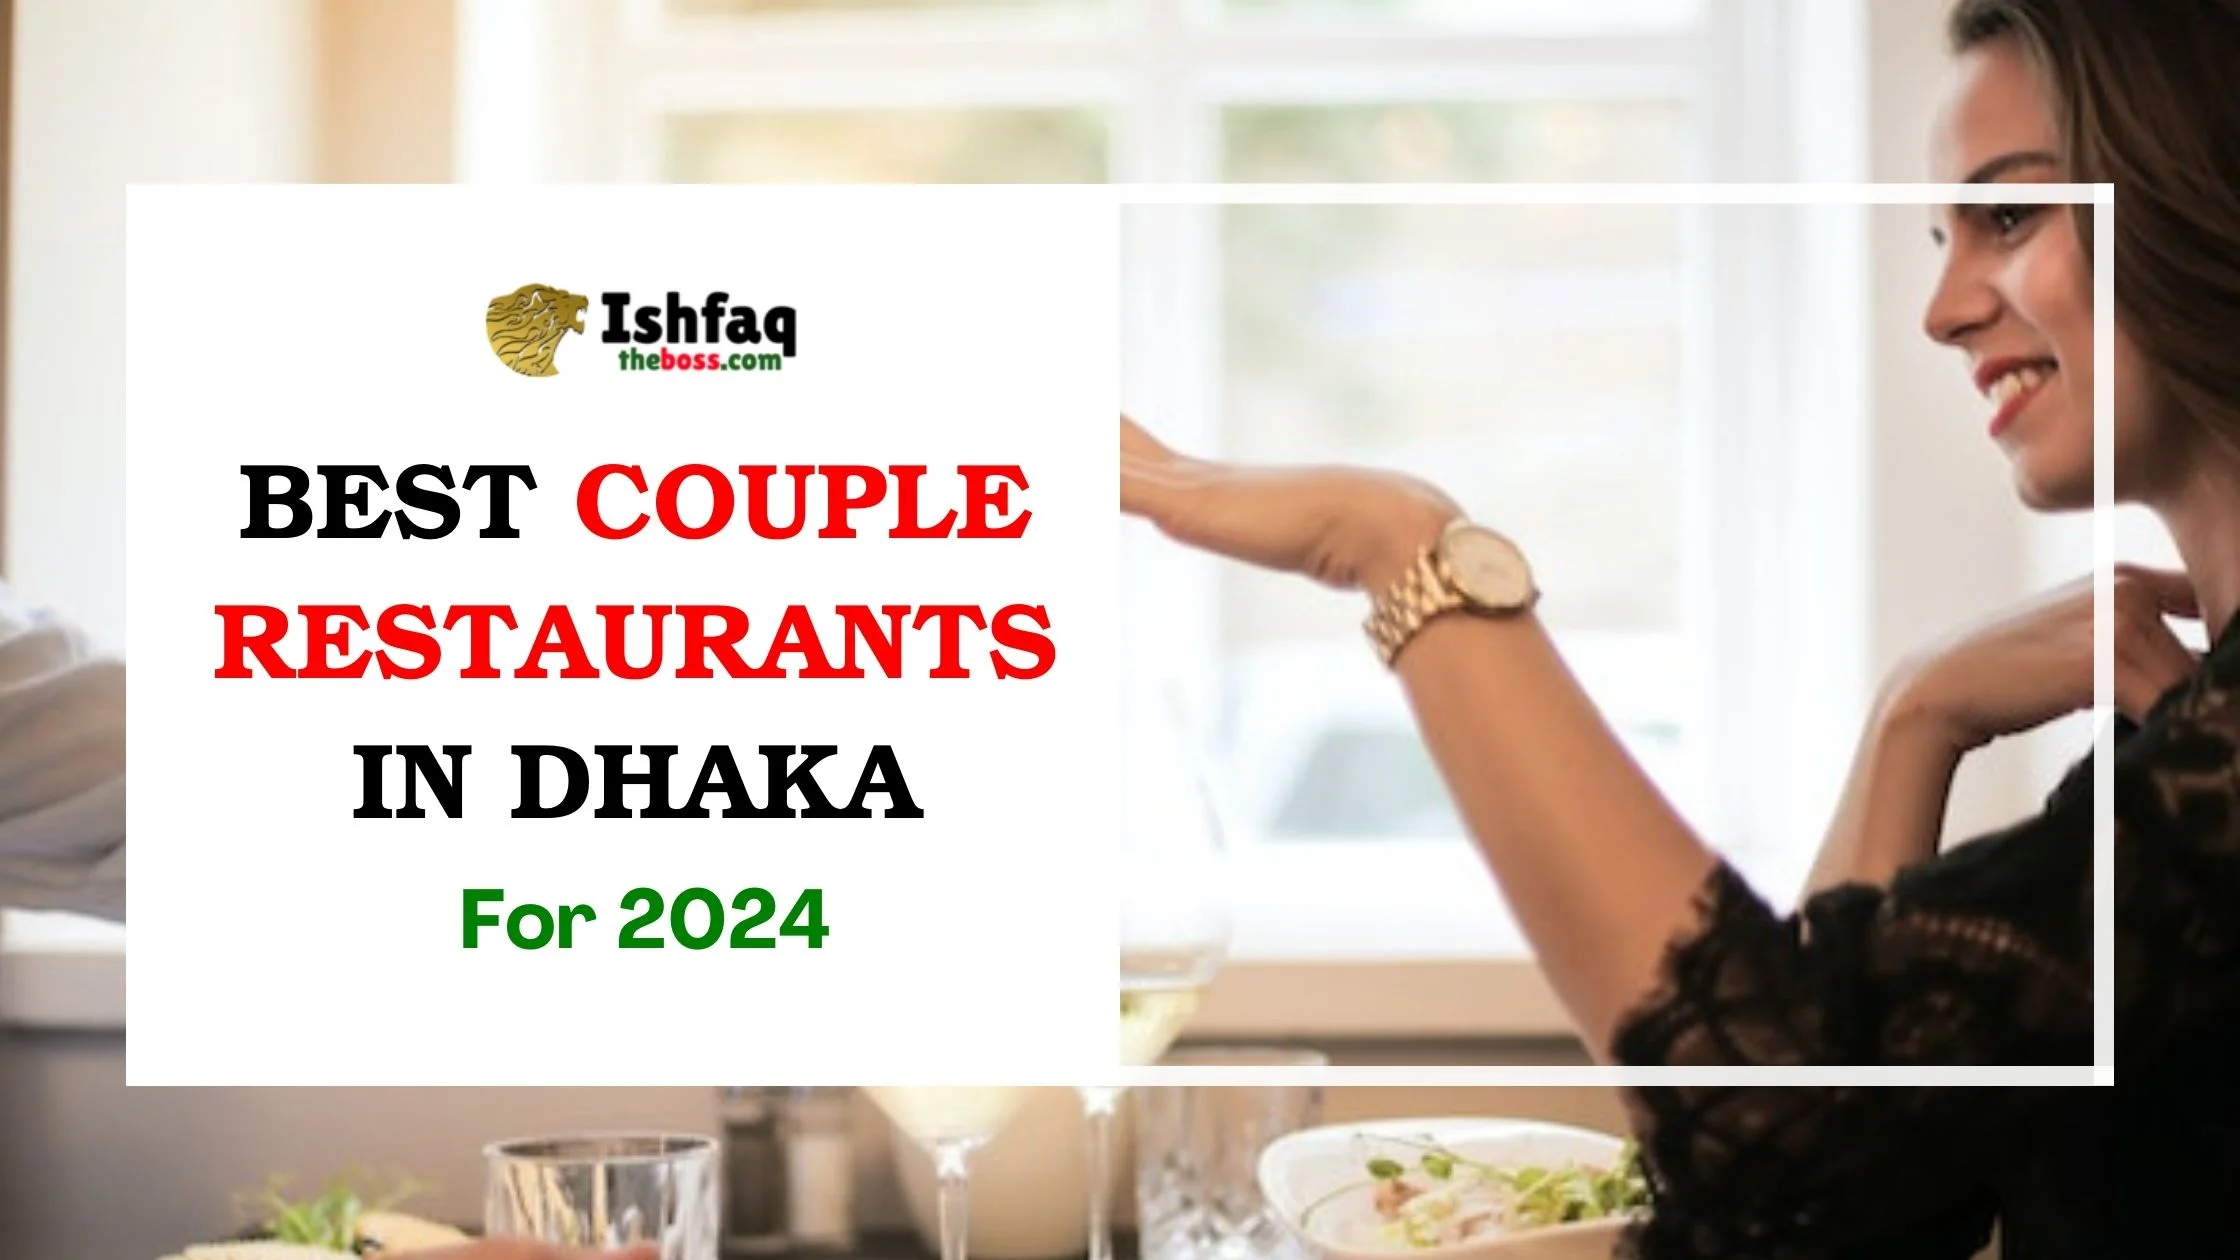 Best Couple Restaurants in Dhaka for 2024